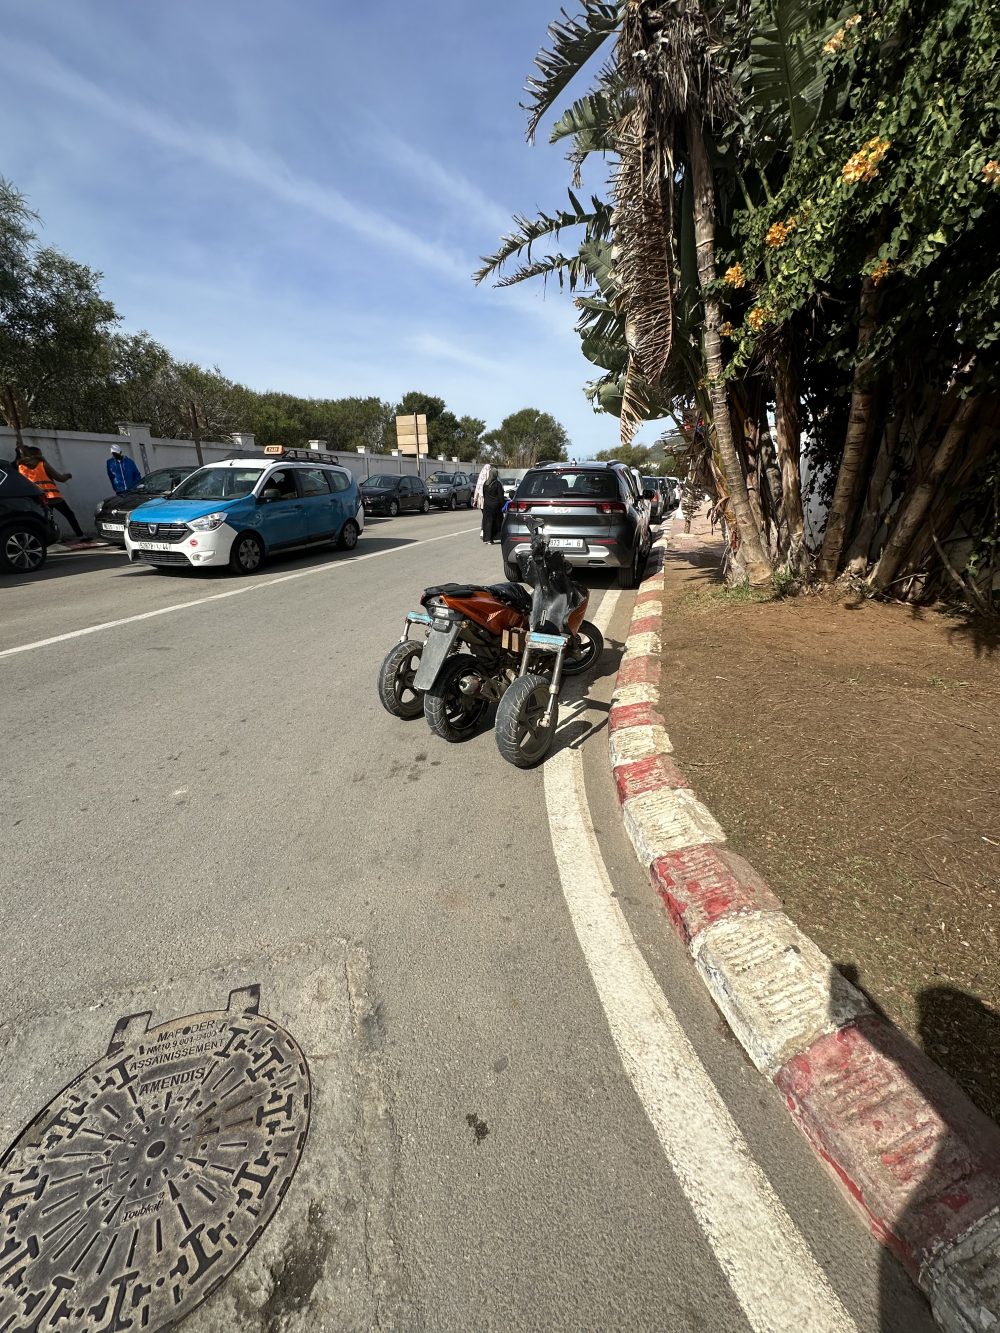 Un finolier que está de paso por Marruecos se ha topado con el prototipo de la Yamaha Amego Segarro.